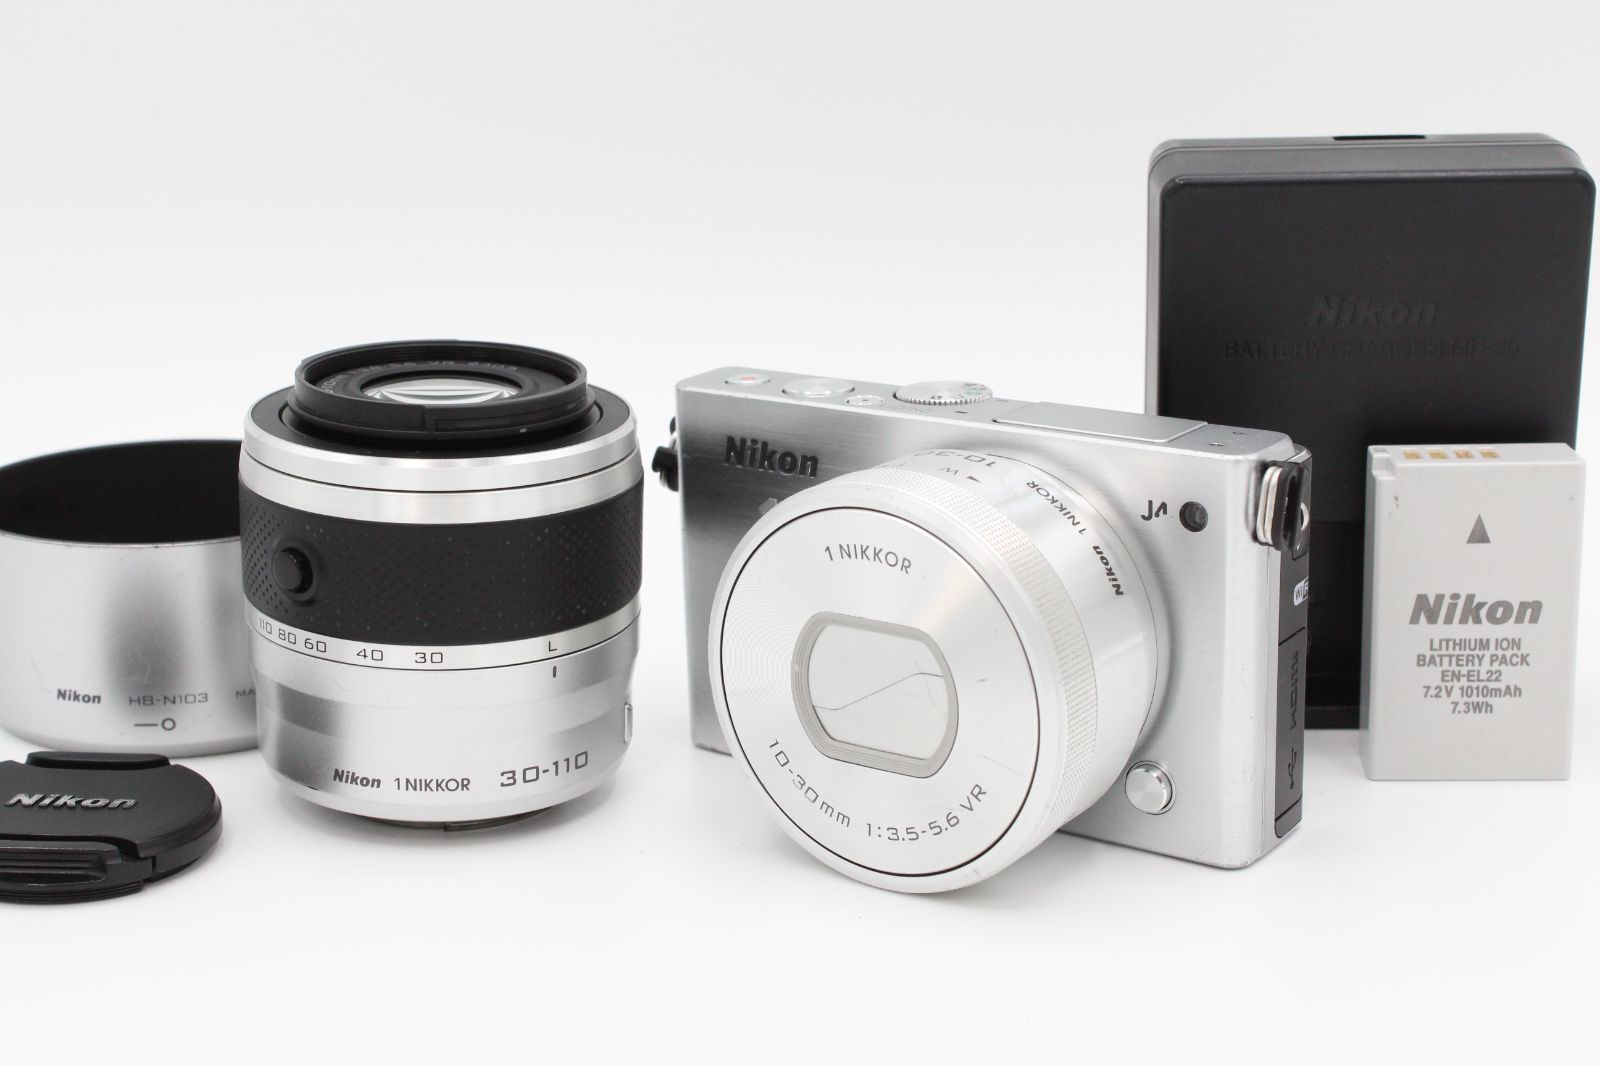 デジタルカメラ Nikon 1 J4 ダブルズームキット [シルバー]カメラ ...